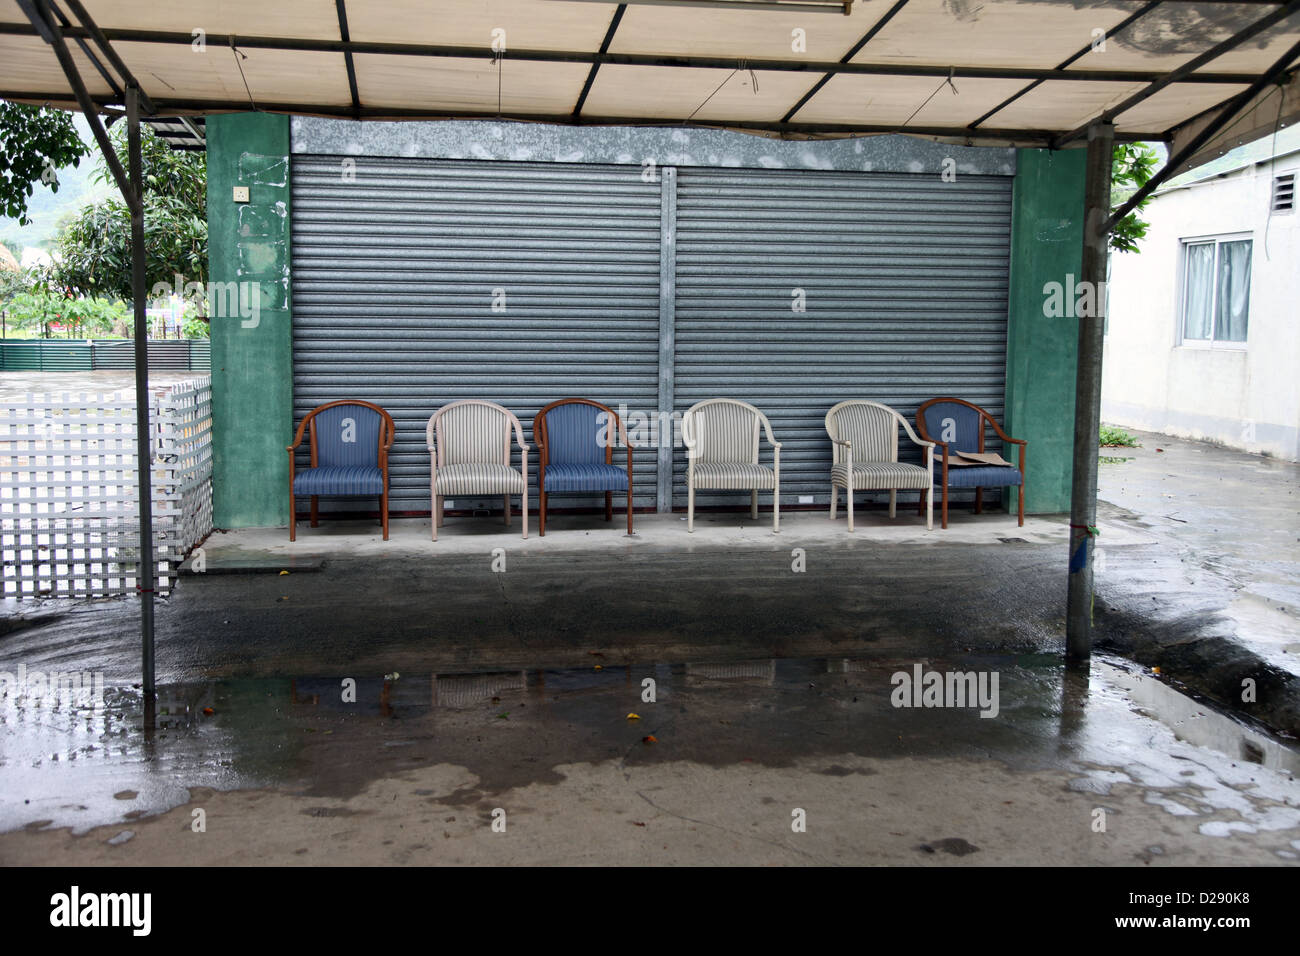 C'est une photo de 6 chaises ou sièges qui se tiennent côte à côte en face d'un atelier fermé à Hong Kong Banque D'Images